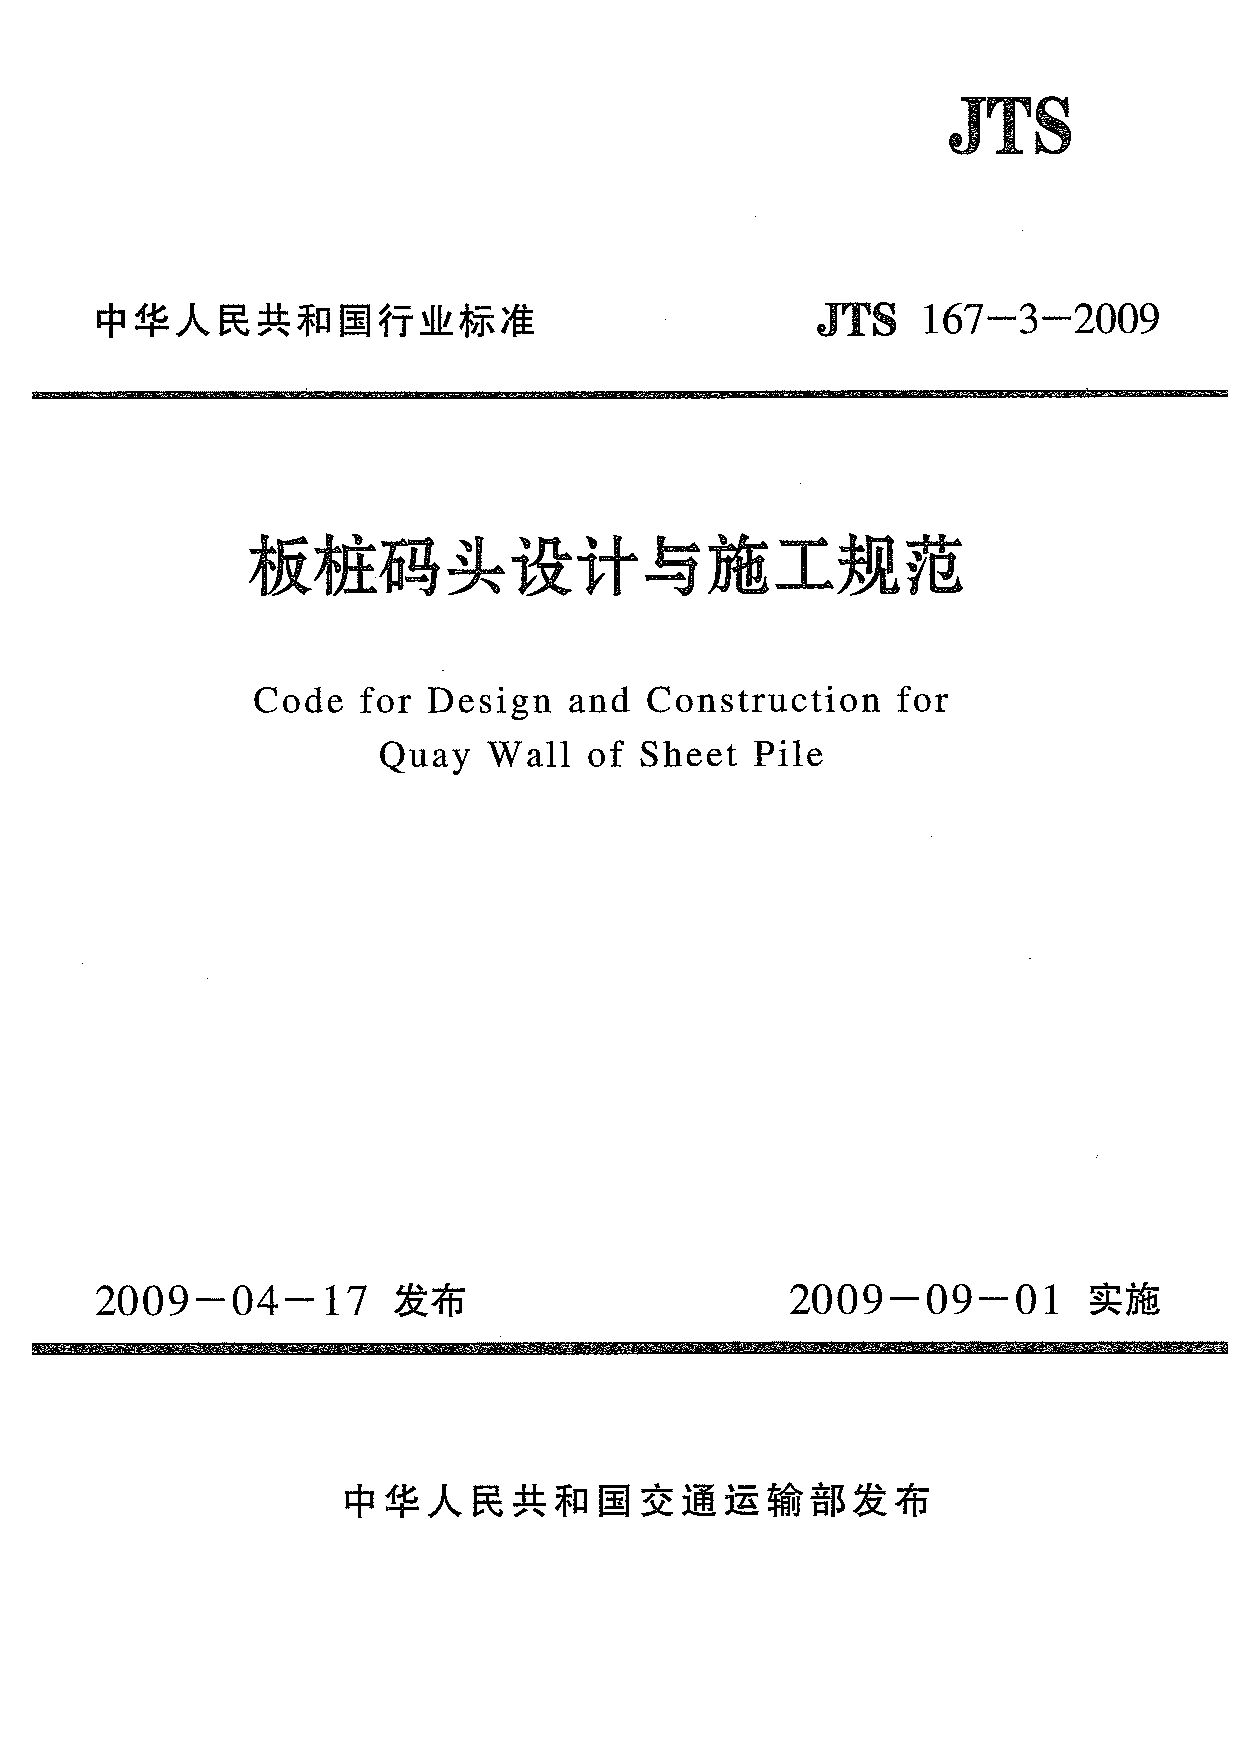 JTS 167-3-2009封面图